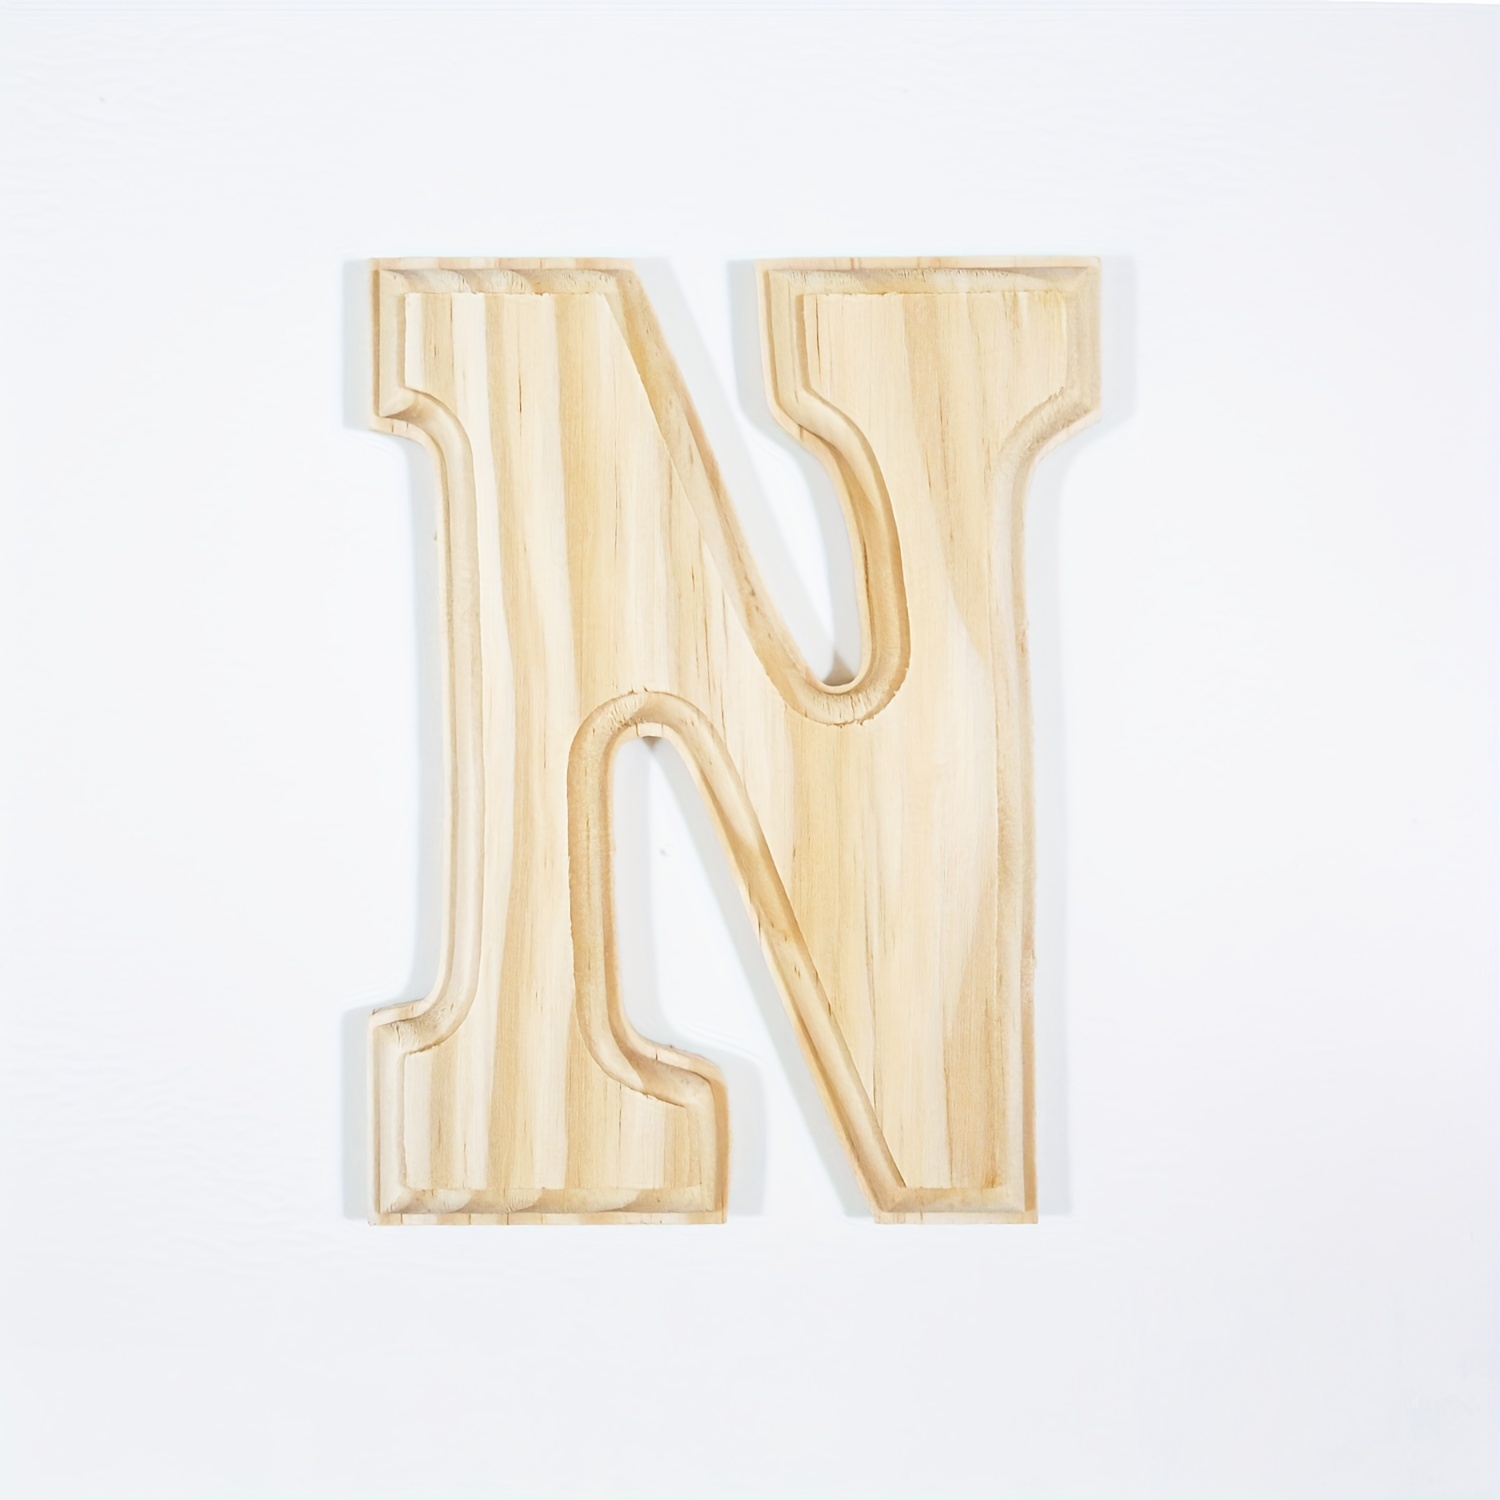 Letras de madera grandes de 12 pulgadas para proyectos de manualidades,  letras de madera pequeñas de 6 pulgadas para decoración de pared,  decoración